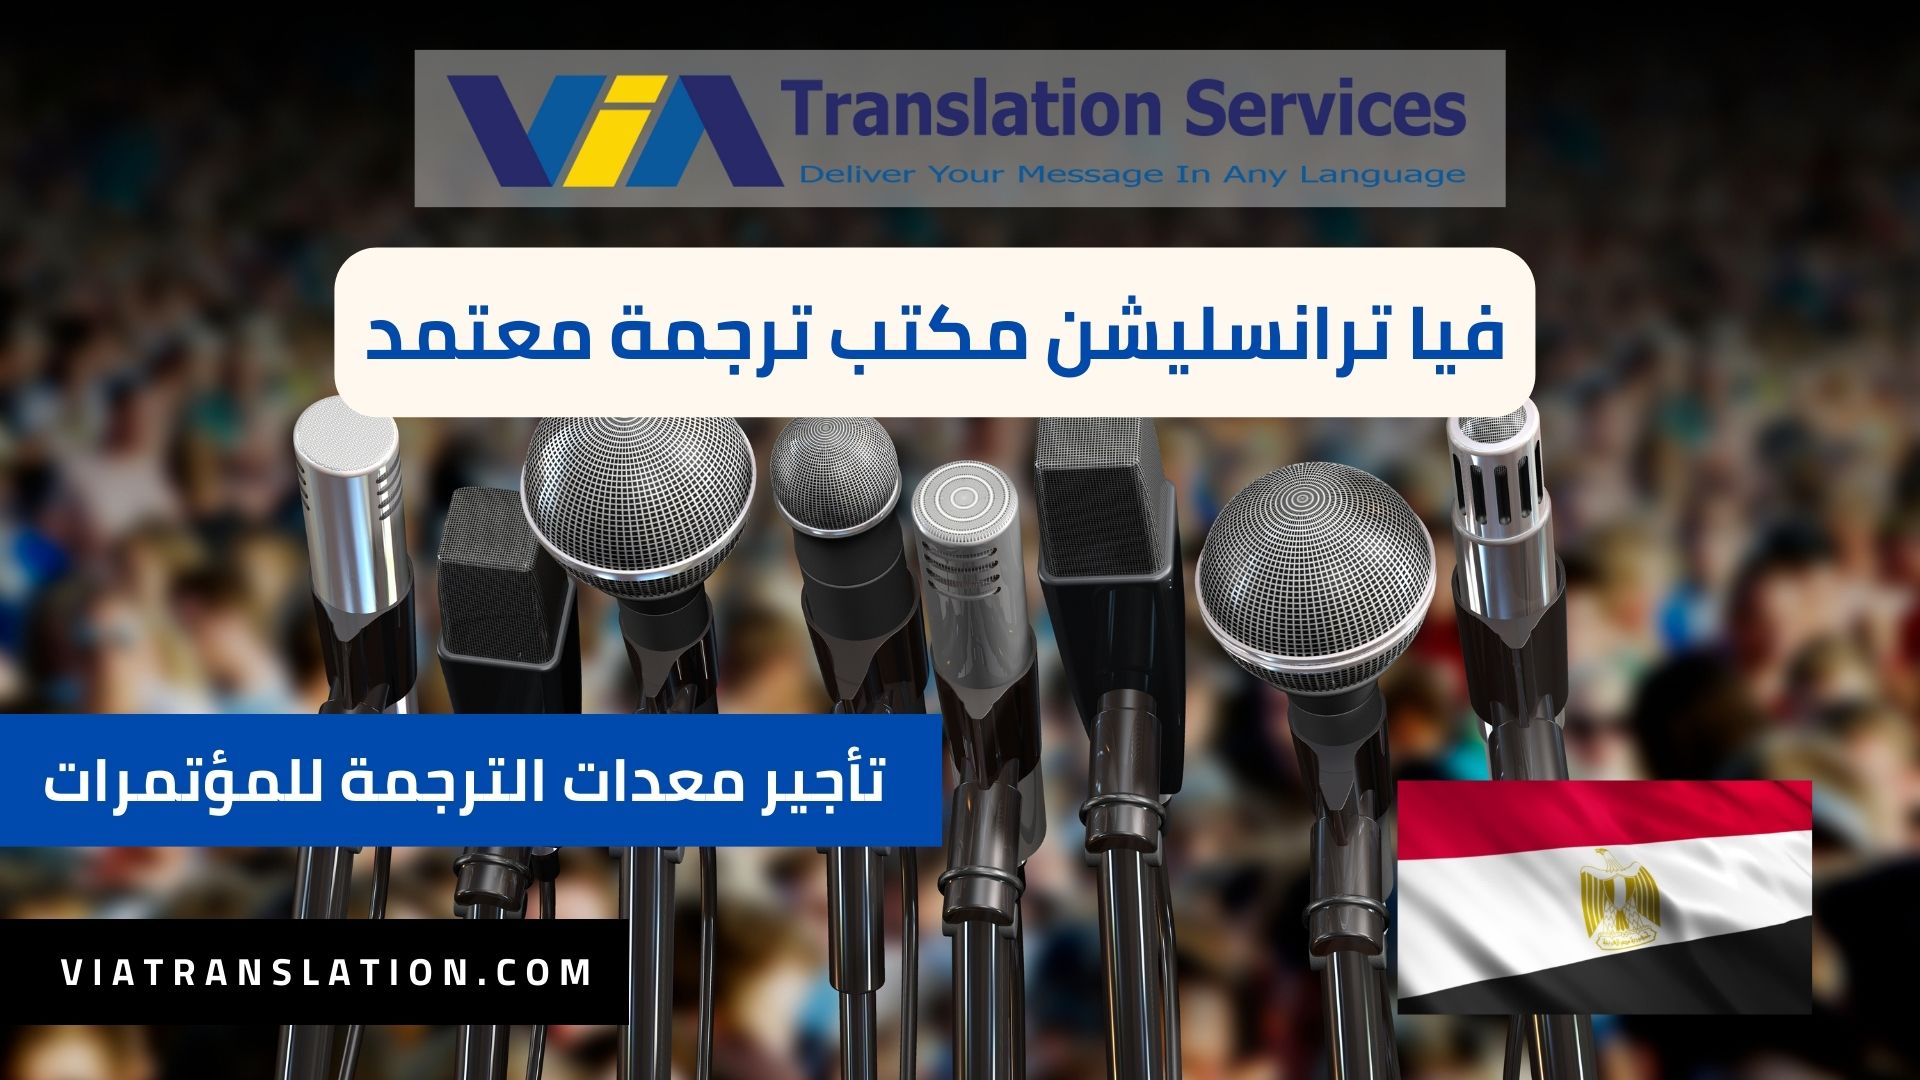 خدمة تأجير معدات الترجمة الفورية للمؤتمرات في مصر مع فيا ترانسليشن